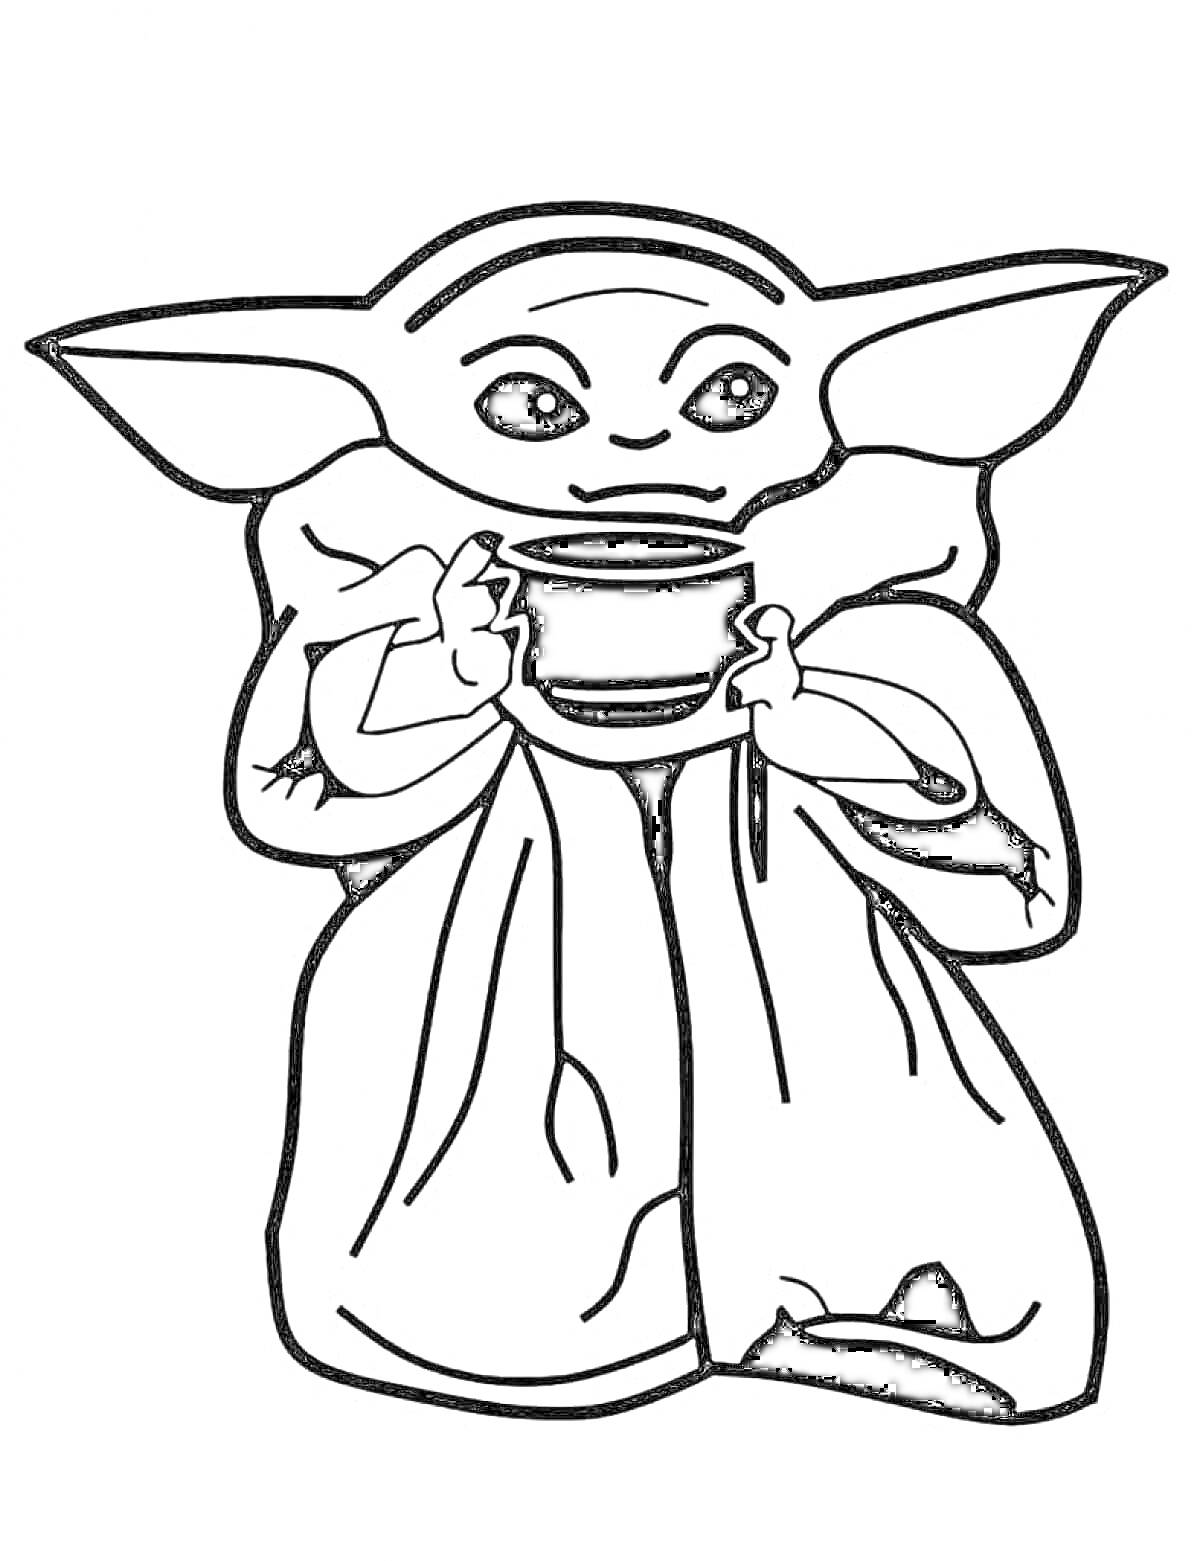 РаскраскаАнимационный персонаж с большими ушами, держащий чашку, в длинной одежде